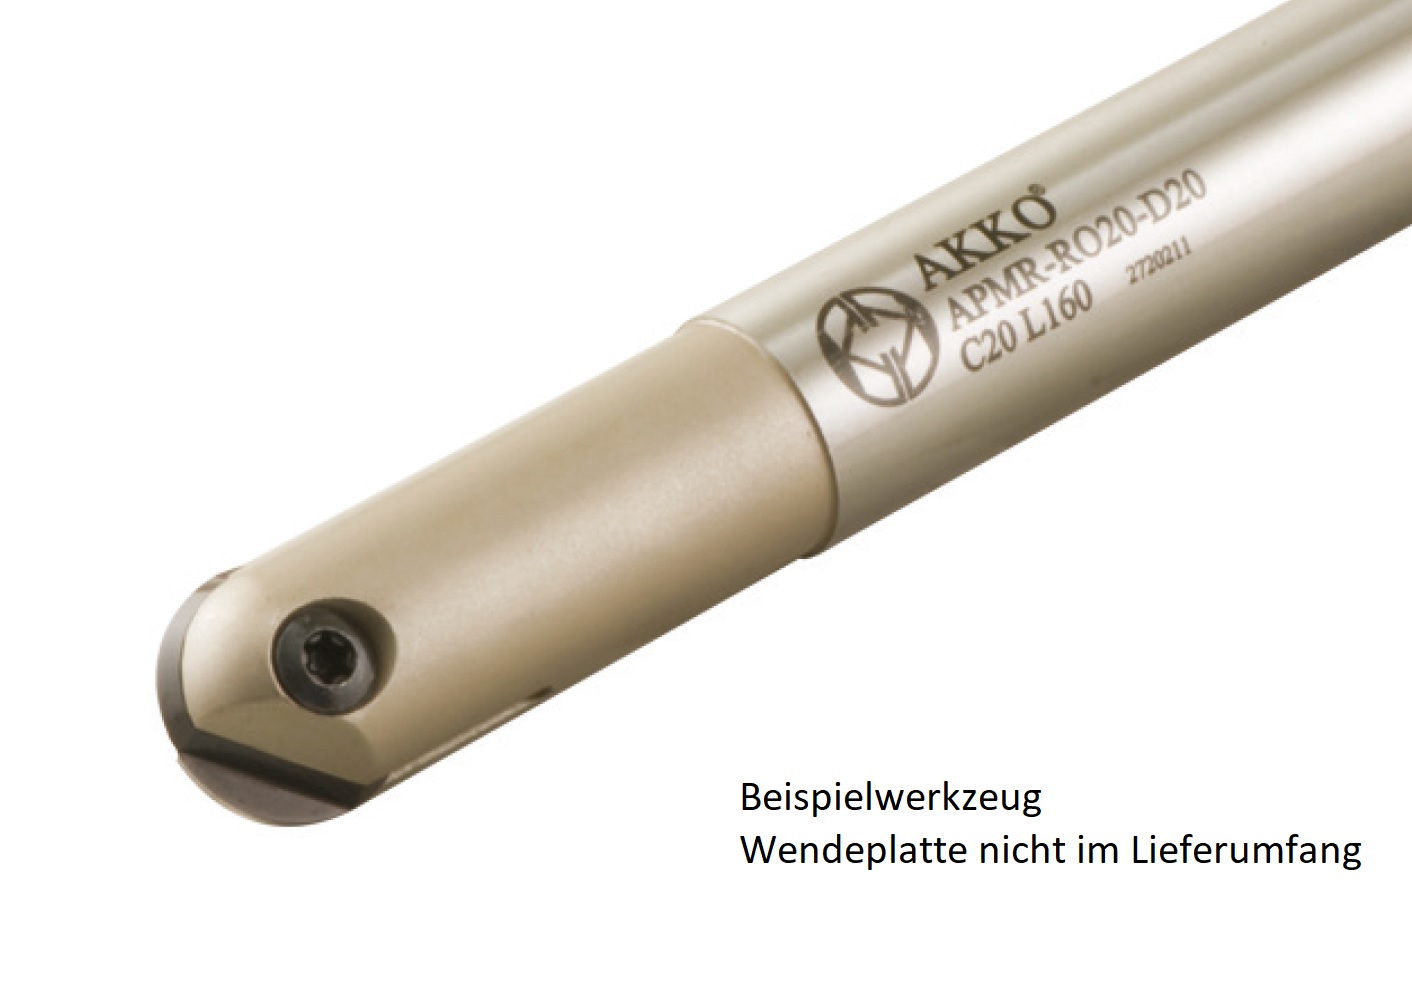 AKKO-Kugelkopierfräser für Wendeplatten, ø 20 mm, kompatibel mit ZCC ROHX 2005
Schaft-ø 25, ohne Innenkühlung